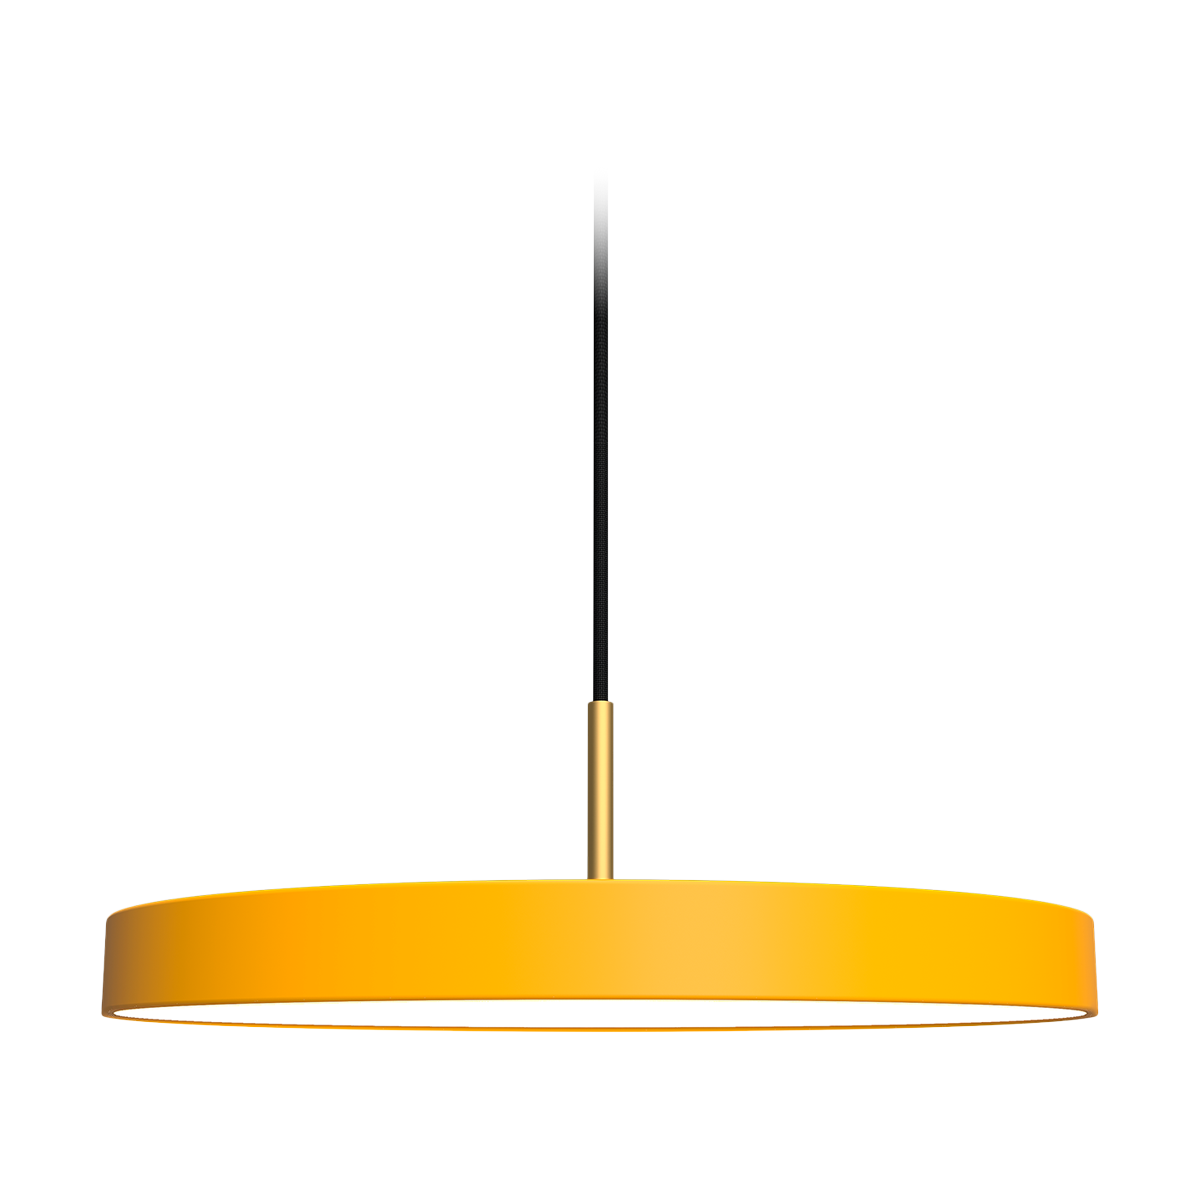 Asteria Medium hanglamp saffron yellow - met koordset - Ø 43 cm